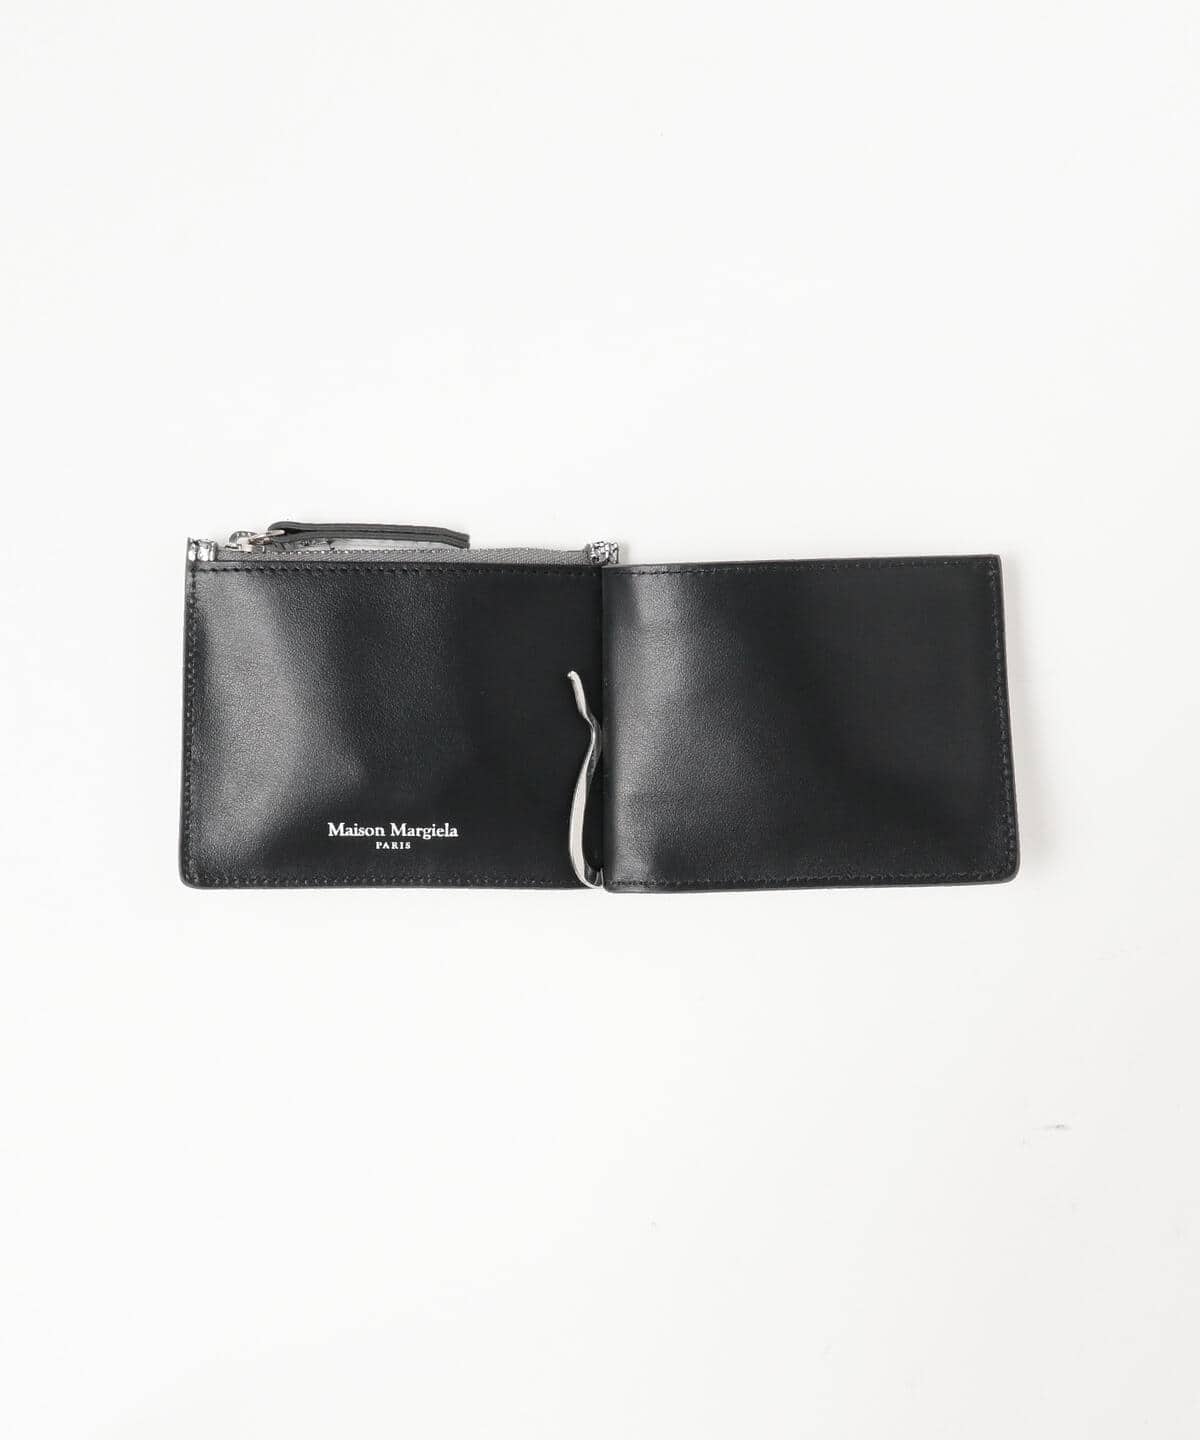 新品 メゾン マルジェラ ブロークンミラー クラックレザー カードケース 財布